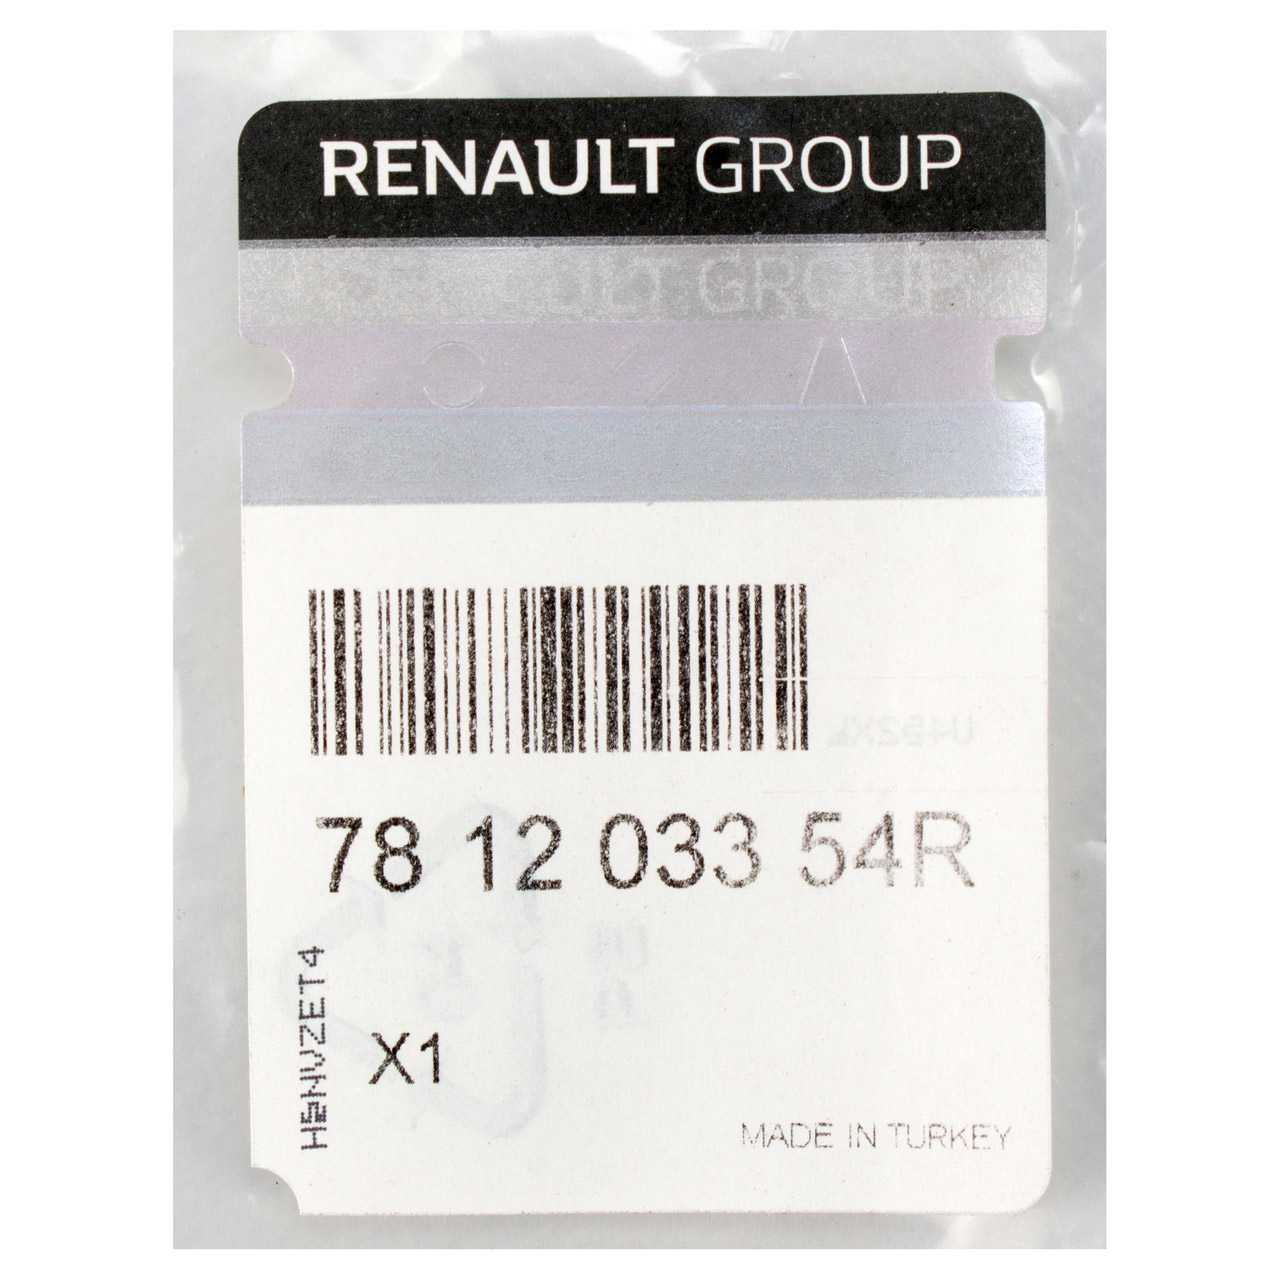 ORIGINAL Renault Gehäuse Tankverschluss Clio 4 ohne Staubschutz 781203354R